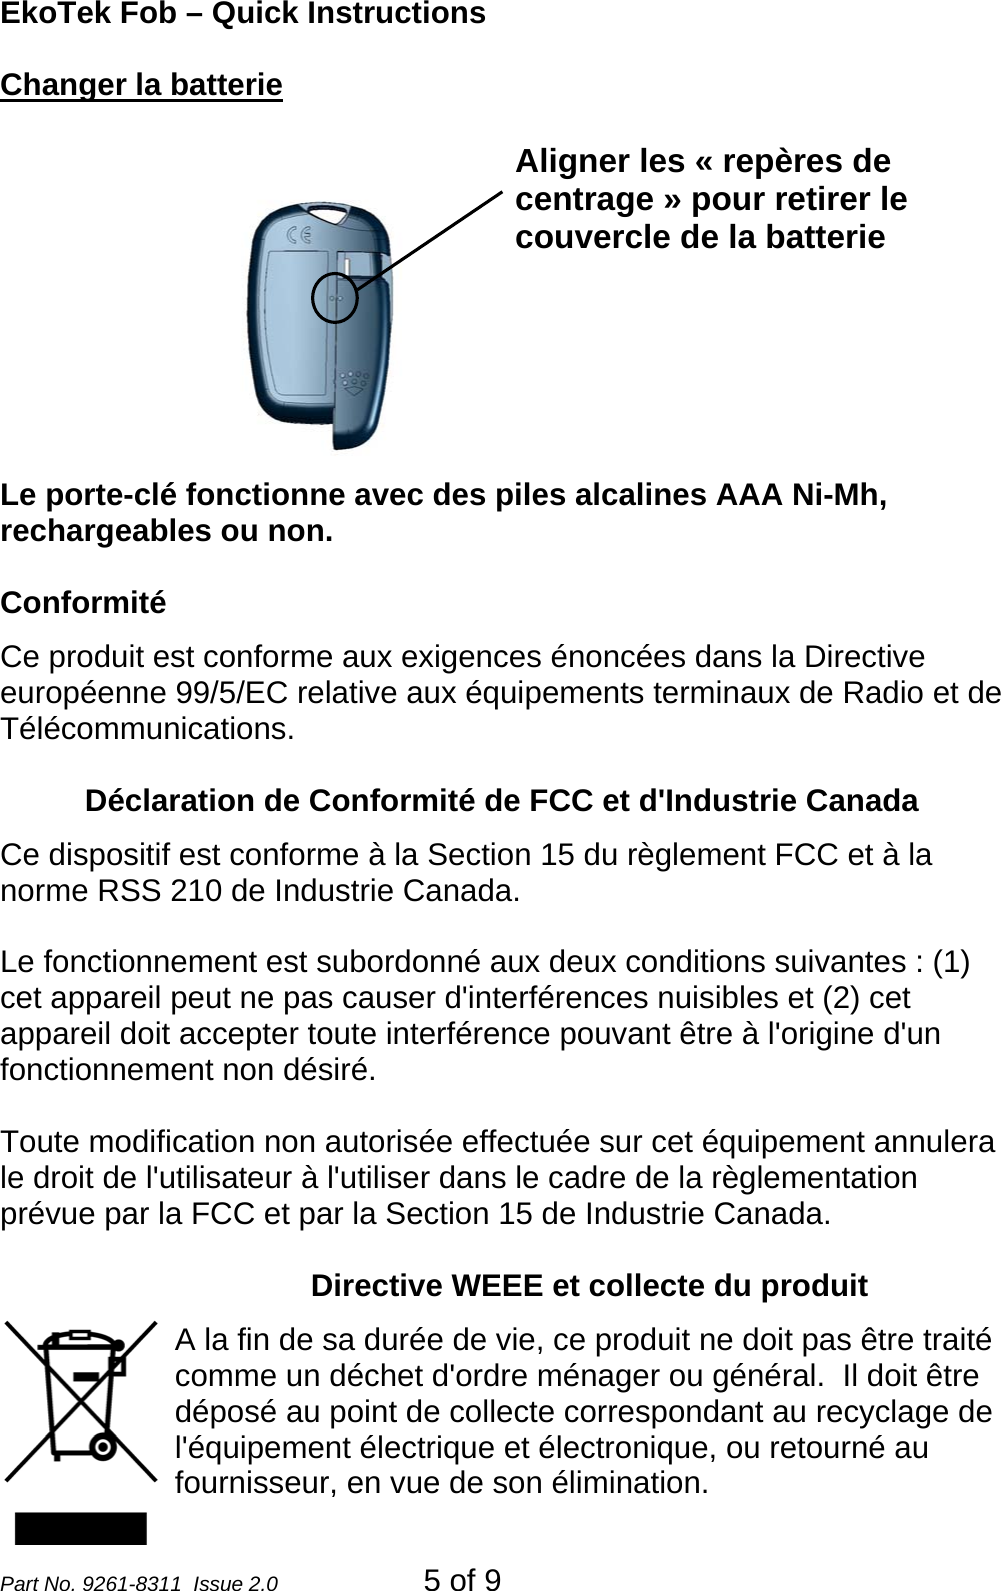 EkoTek Fob – Quick Instructions Changer la batterie  Le porte-clé fonctionne avec des piles alcalines AAA Ni-Mh, rechargeables ou non. Aligner les « repères de centrage » pour retirer le couvercle de la batterie  Conformité Ce produit est conforme aux exigences énoncées dans la Directive européenne 99/5/EC relative aux équipements terminaux de Radio et de Télécommunications.     Déclaration de Conformité de FCC et d&apos;Industrie Canada  Ce dispositif est conforme à la Section 15 du règlement FCC et à la norme RSS 210 de Industrie Canada.  Le fonctionnement est subordonné aux deux conditions suivantes : (1) cet appareil peut ne pas causer d&apos;interférences nuisibles et (2) cet appareil doit accepter toute interférence pouvant être à l&apos;origine d&apos;un fonctionnement non désiré.  Toute modification non autorisée effectuée sur cet équipement annulera le droit de l&apos;utilisateur à l&apos;utiliser dans le cadre de la règlementation prévue par la FCC et par la Section 15 de Industrie Canada.  Directive WEEE et collecte du produit A la fin de sa durée de vie, ce produit ne doit pas être traité comme un déchet d&apos;ordre ménager ou général.  Il doit être déposé au point de collecte correspondant au recyclage de l&apos;équipement électrique et électronique, ou retourné au fournisseur, en vue de son élimination. Part No. 9261-8311  Issue 2.0  5 of 9 